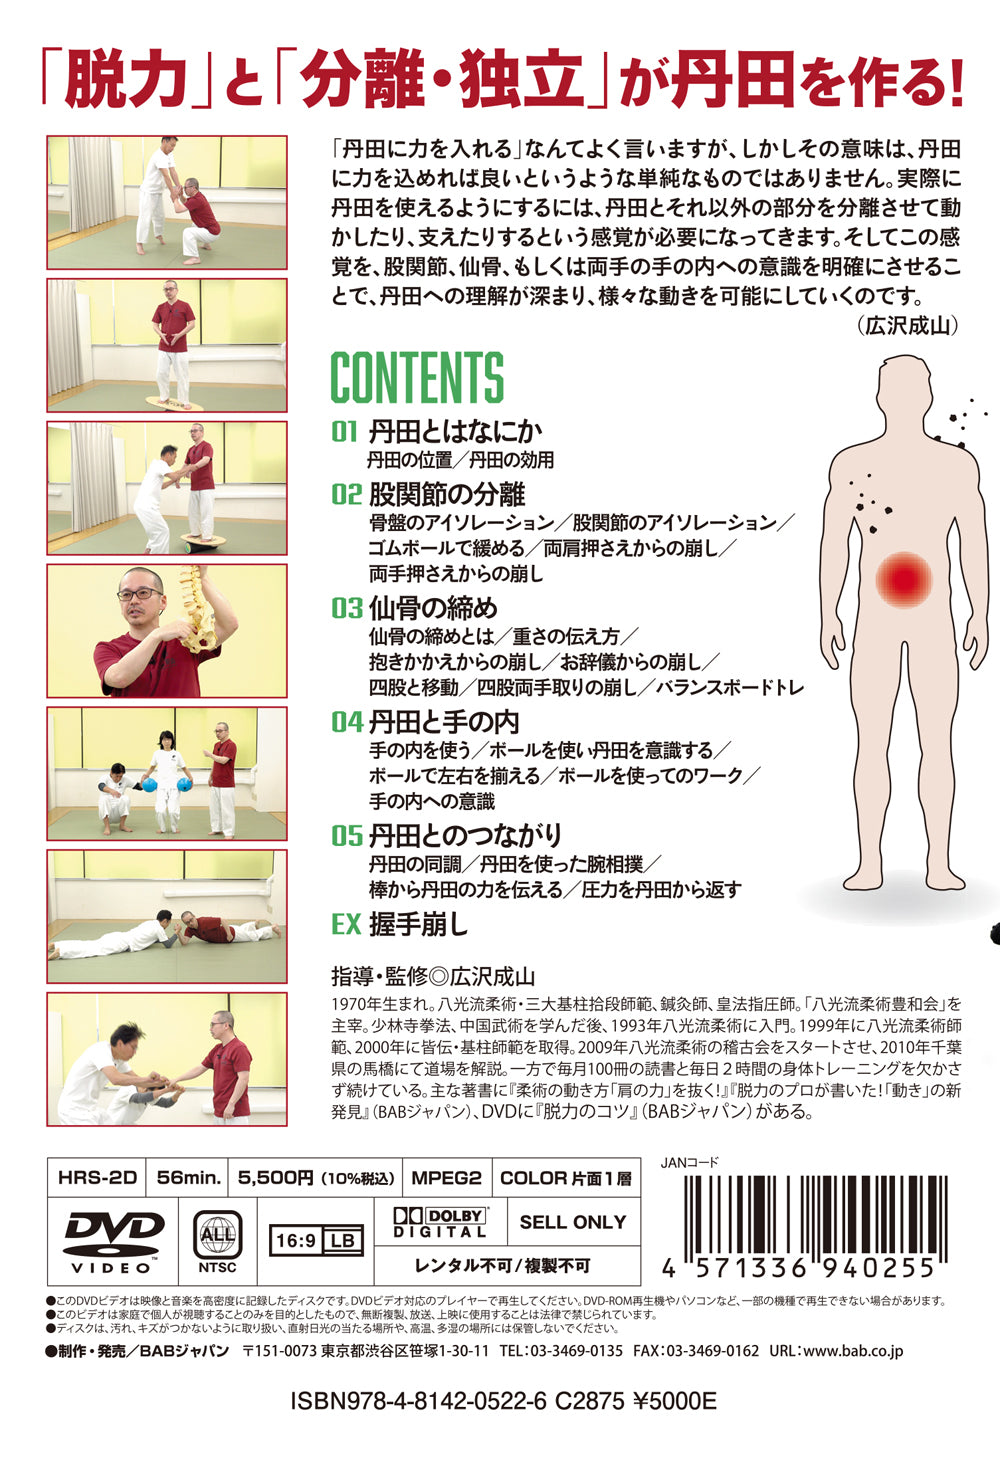 DVD de consejos de Tanden de Seizan Hirosawa